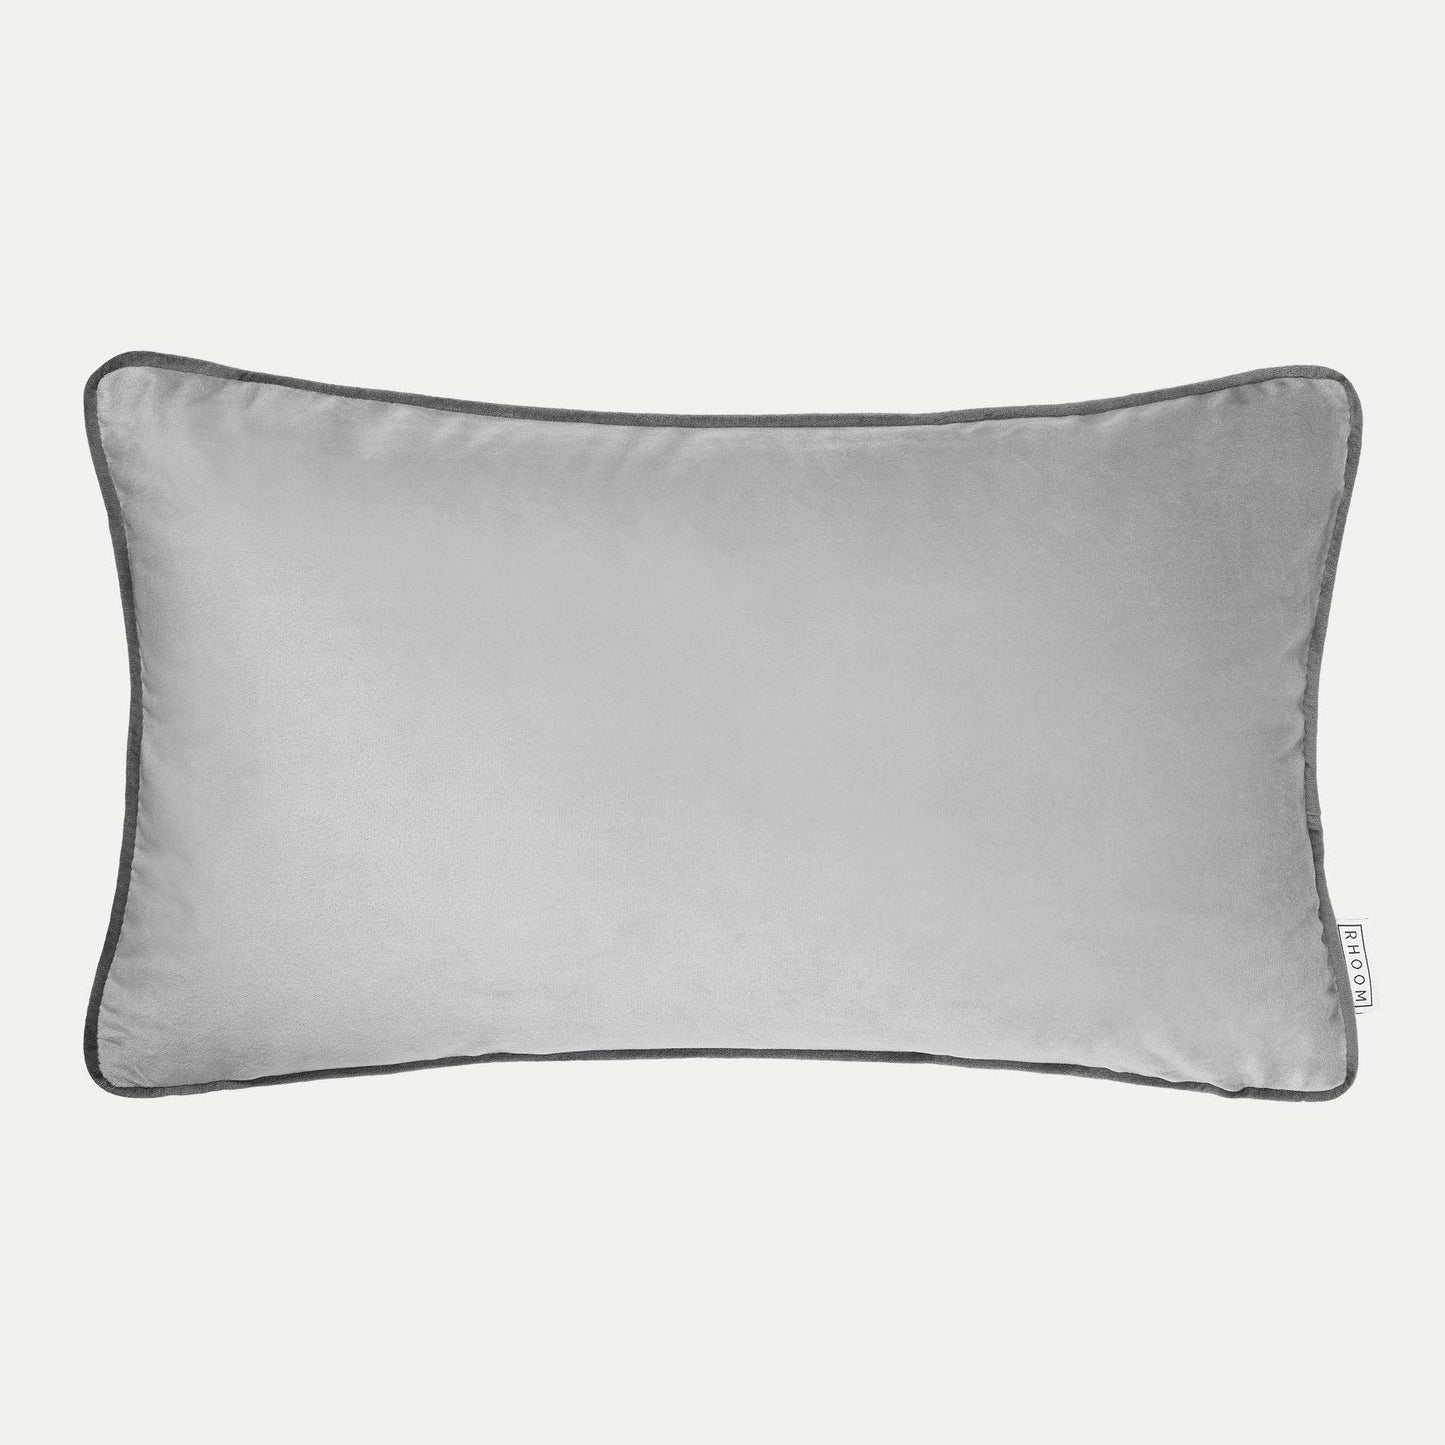 Rectangle Velvet Cushion in Light Grey/Silver 50x30cm 20x12"